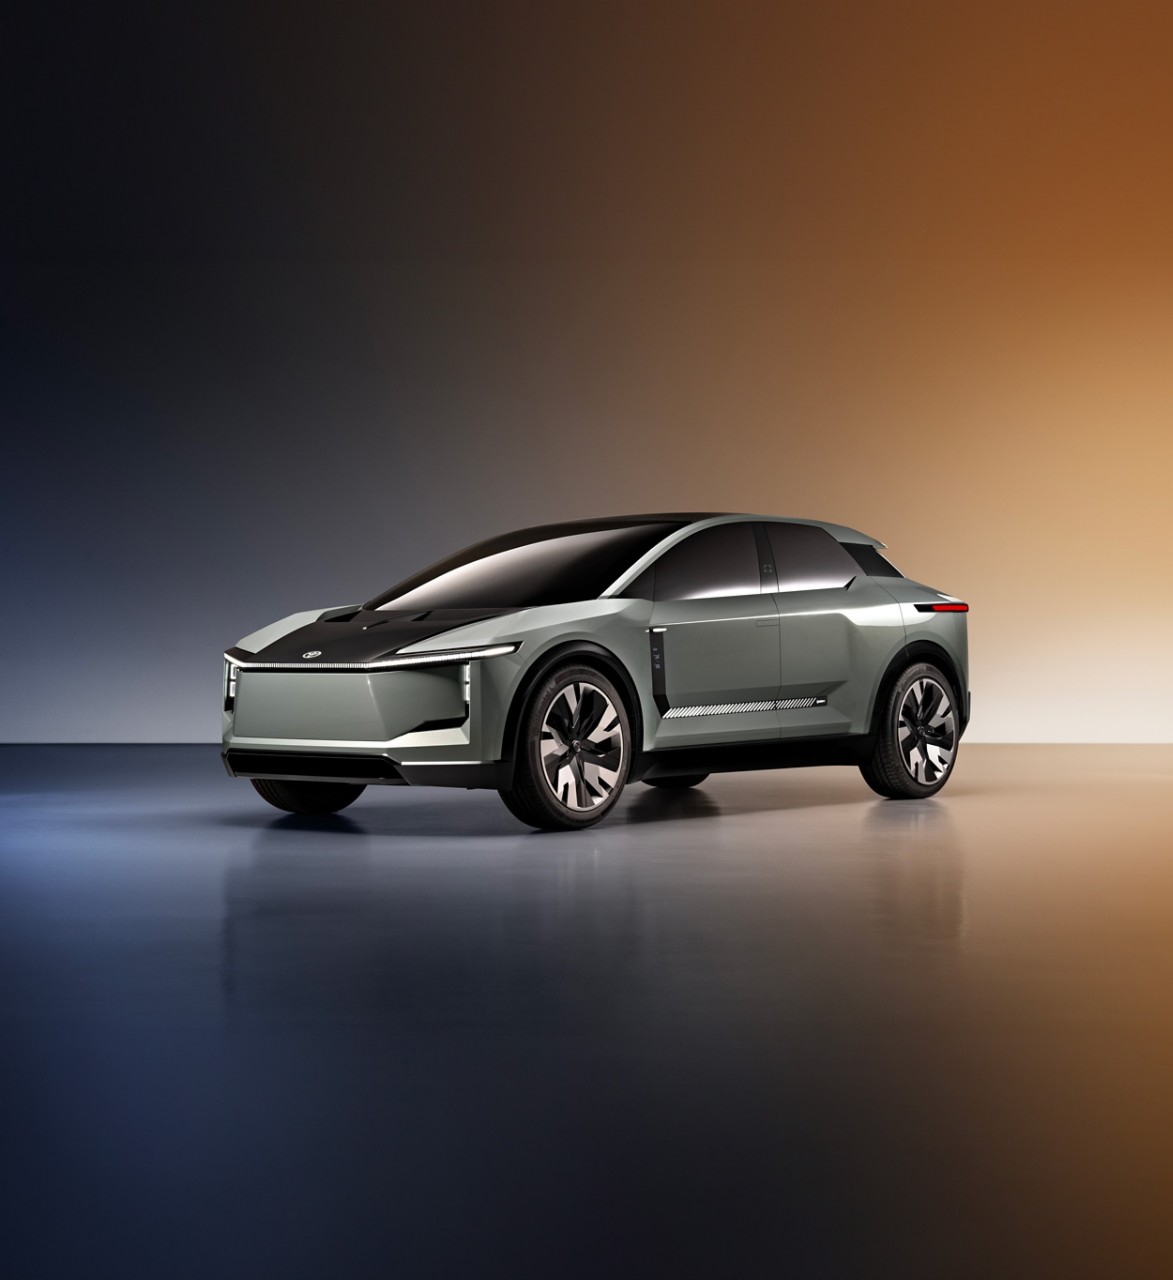 Toyota Konzeptfahrzeug FT-3e Batterie-elektrische Technologien einer neue Generation vor